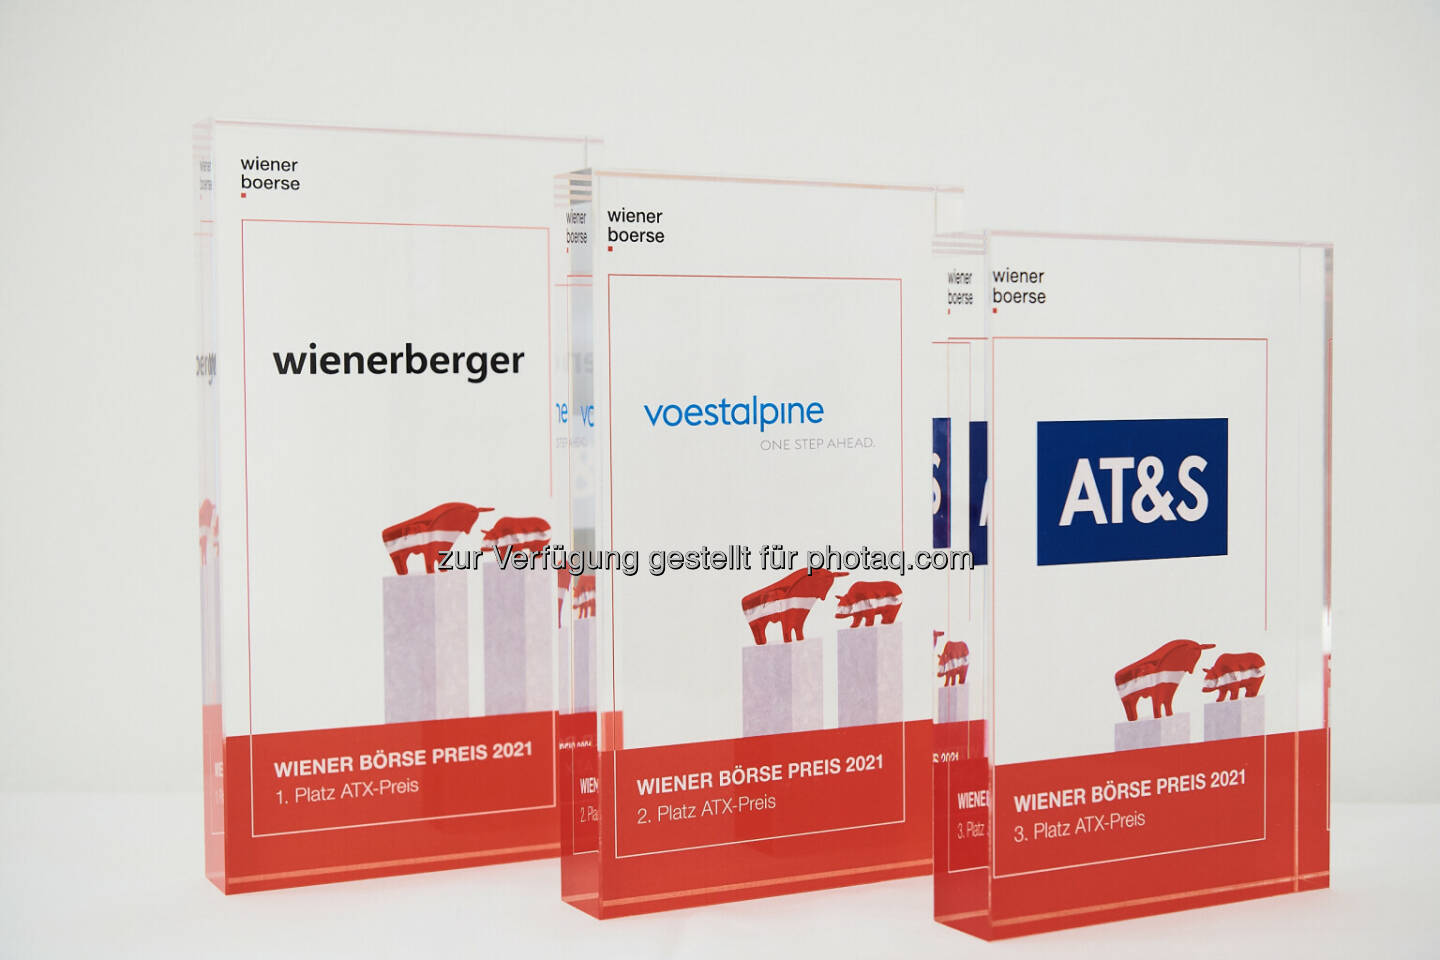 ATX-Preis: 1. Wienerberger, 2. voestalpine, 3. AT&S - Wiener Börse Preis 2021